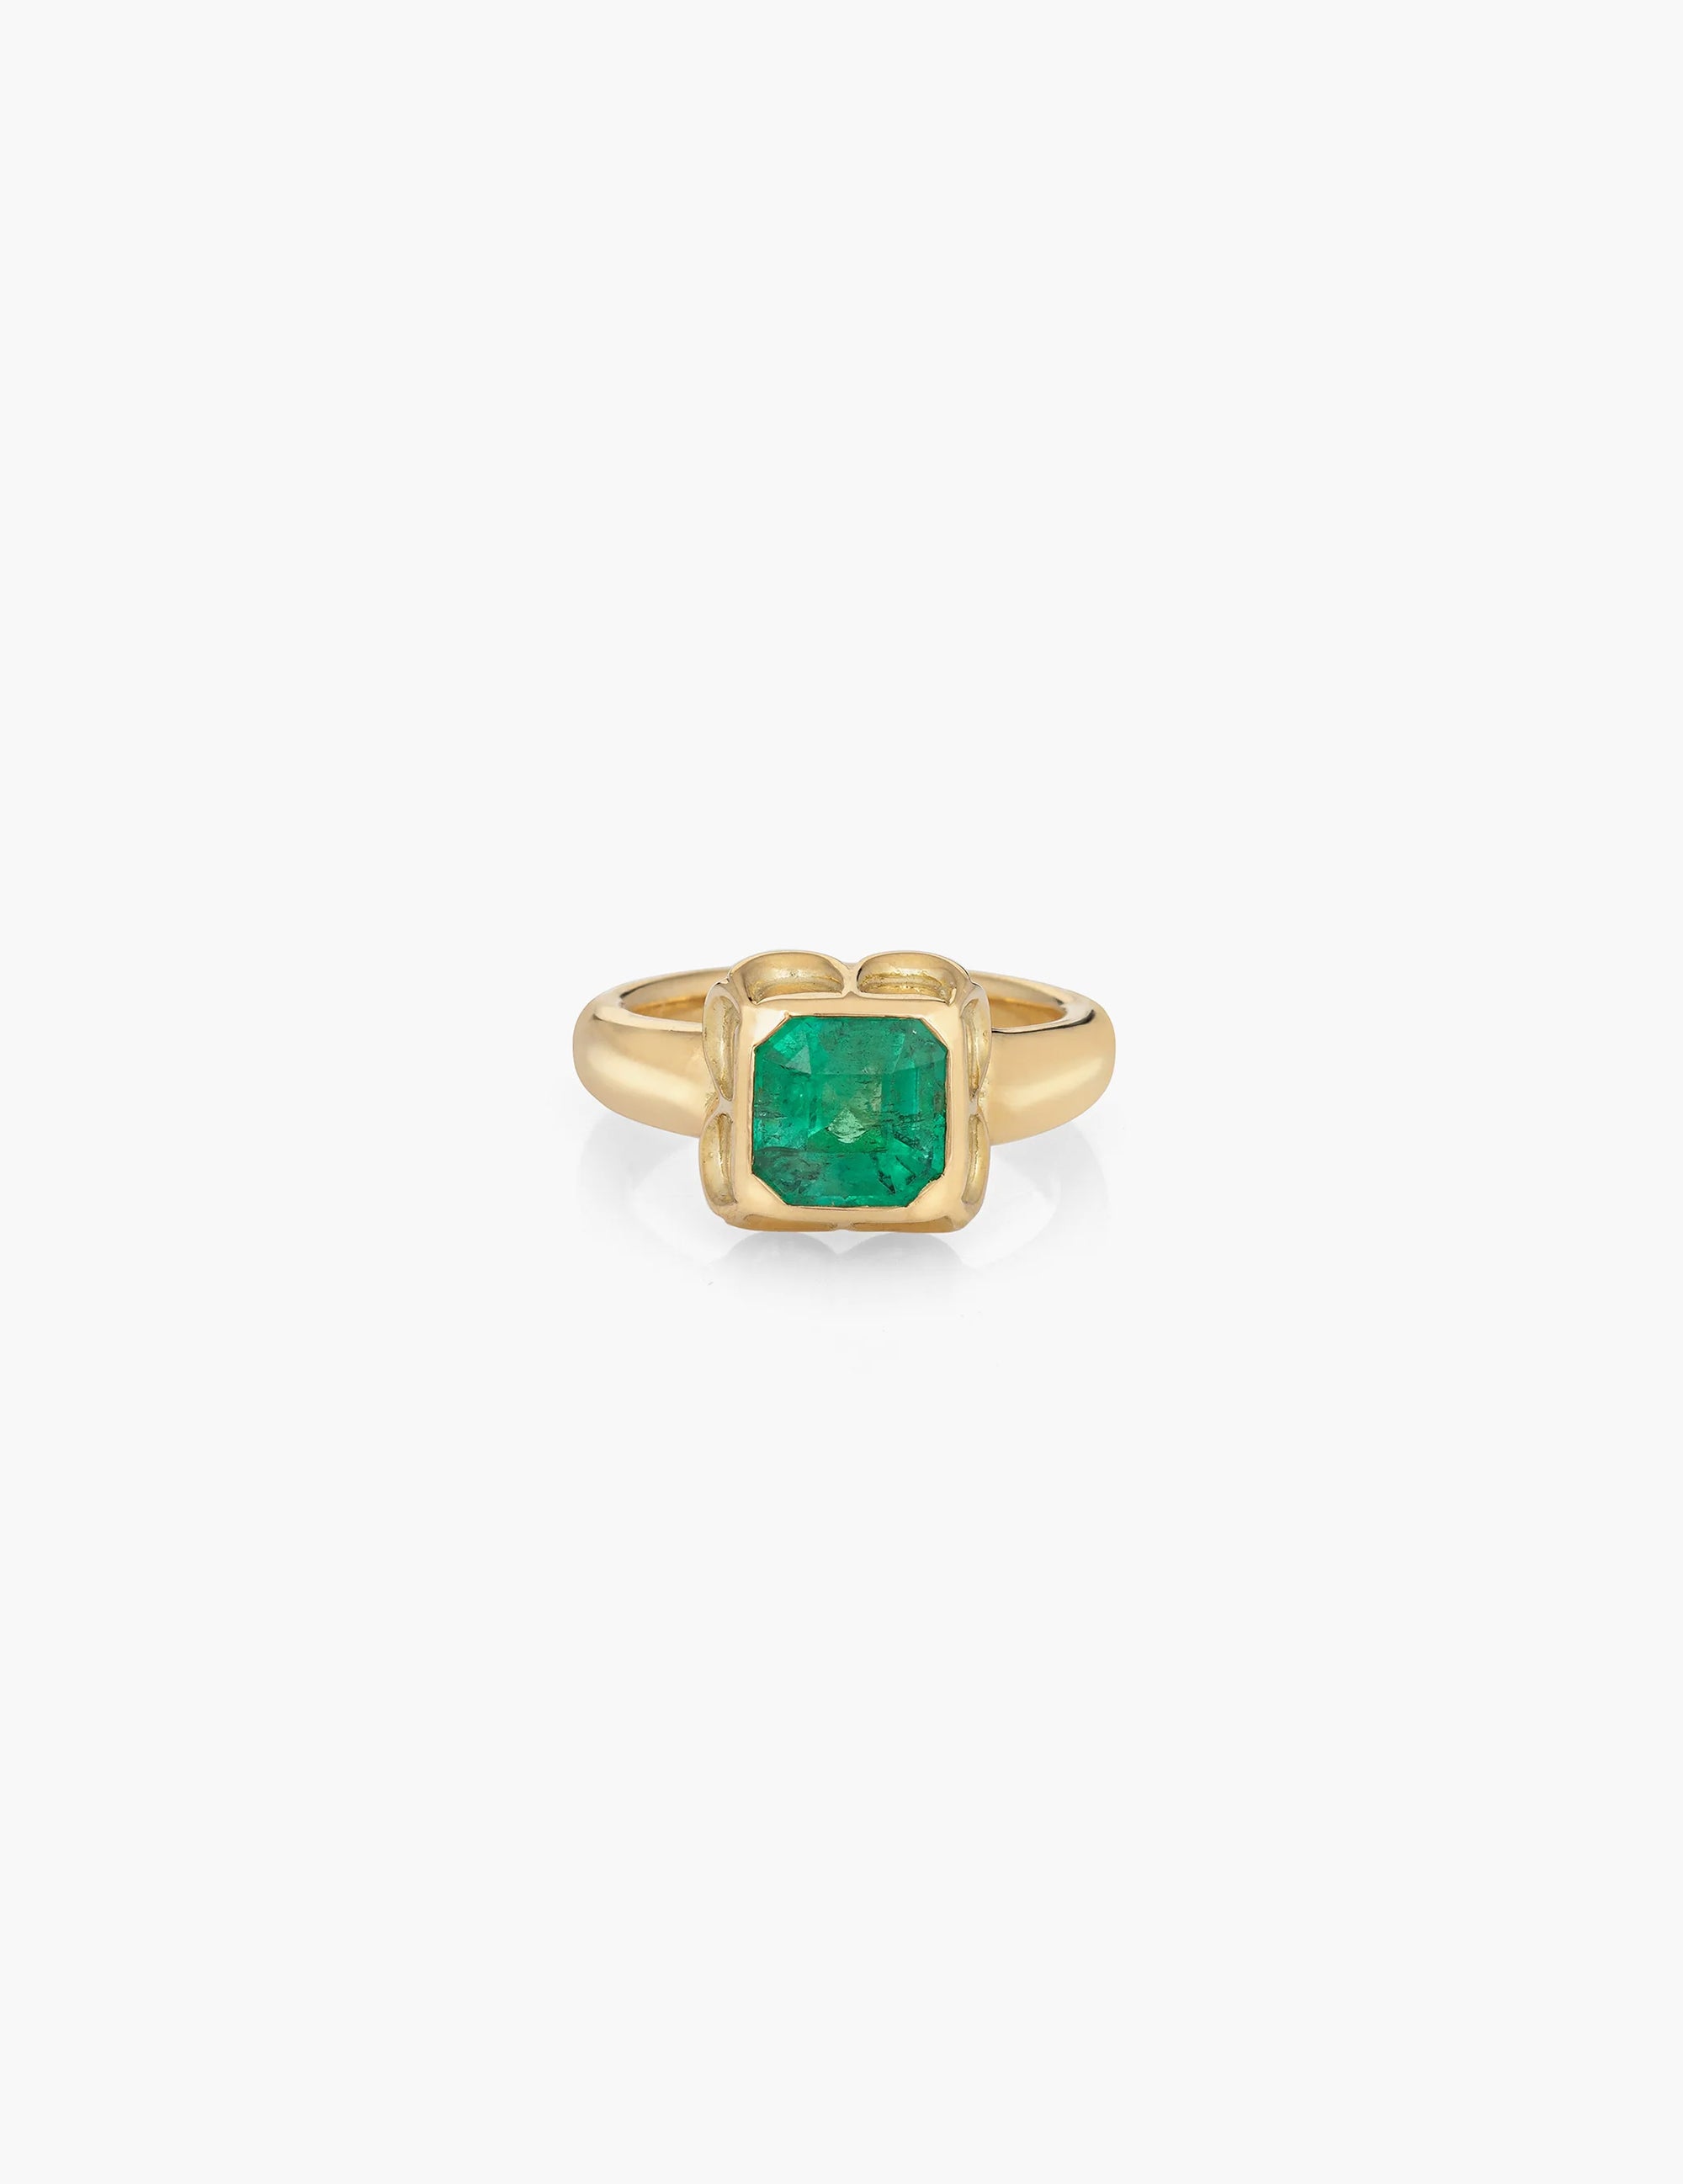 Asscher Cut Emerald Scalloped Setting 18K Ring